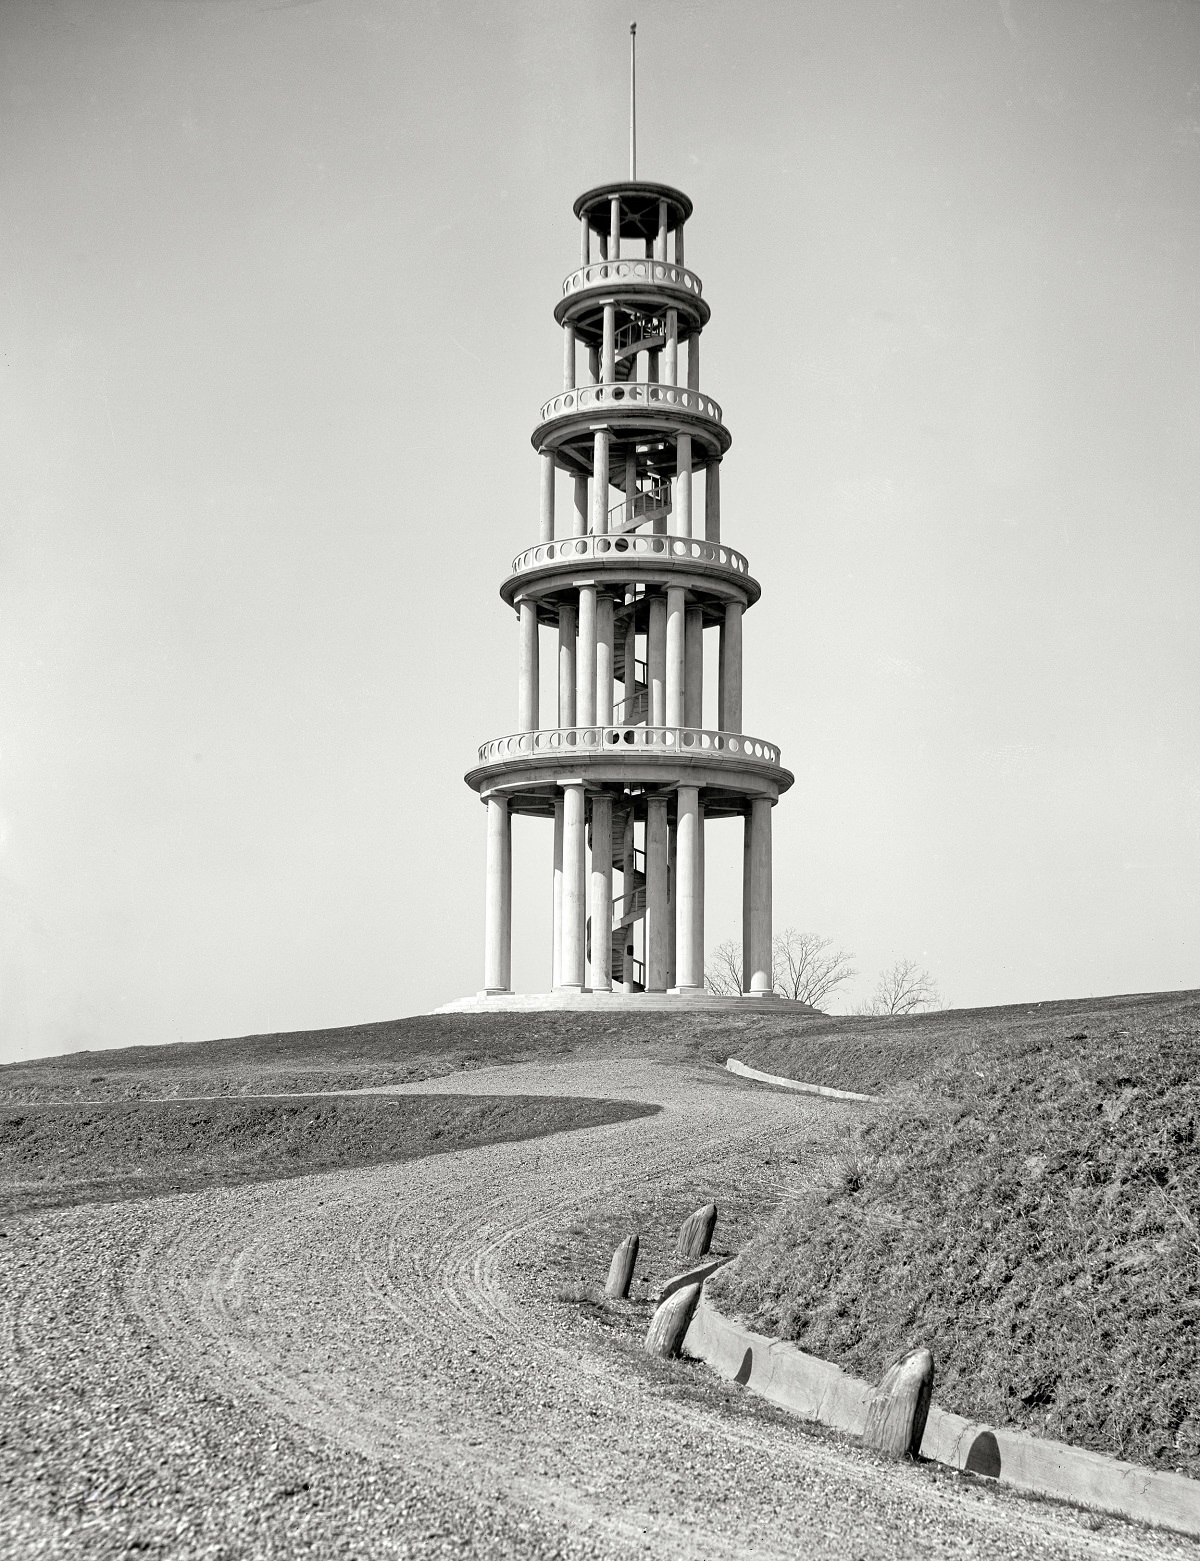 Winding tower at Vicksburg National Military Park, 1909.